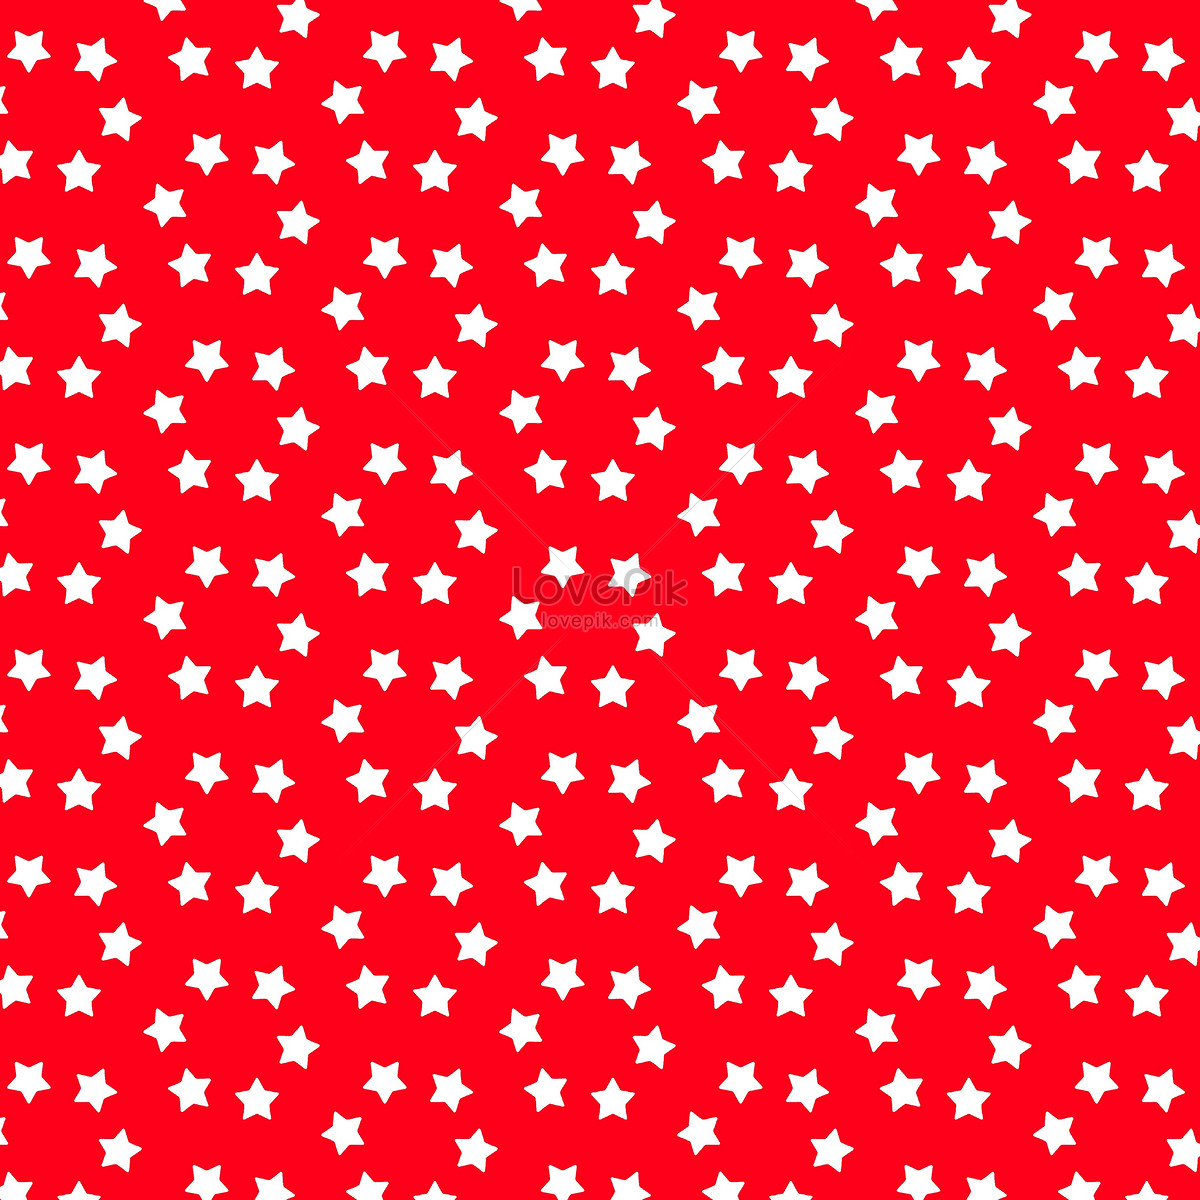 76+ Gambar Bintang Merah Putih 